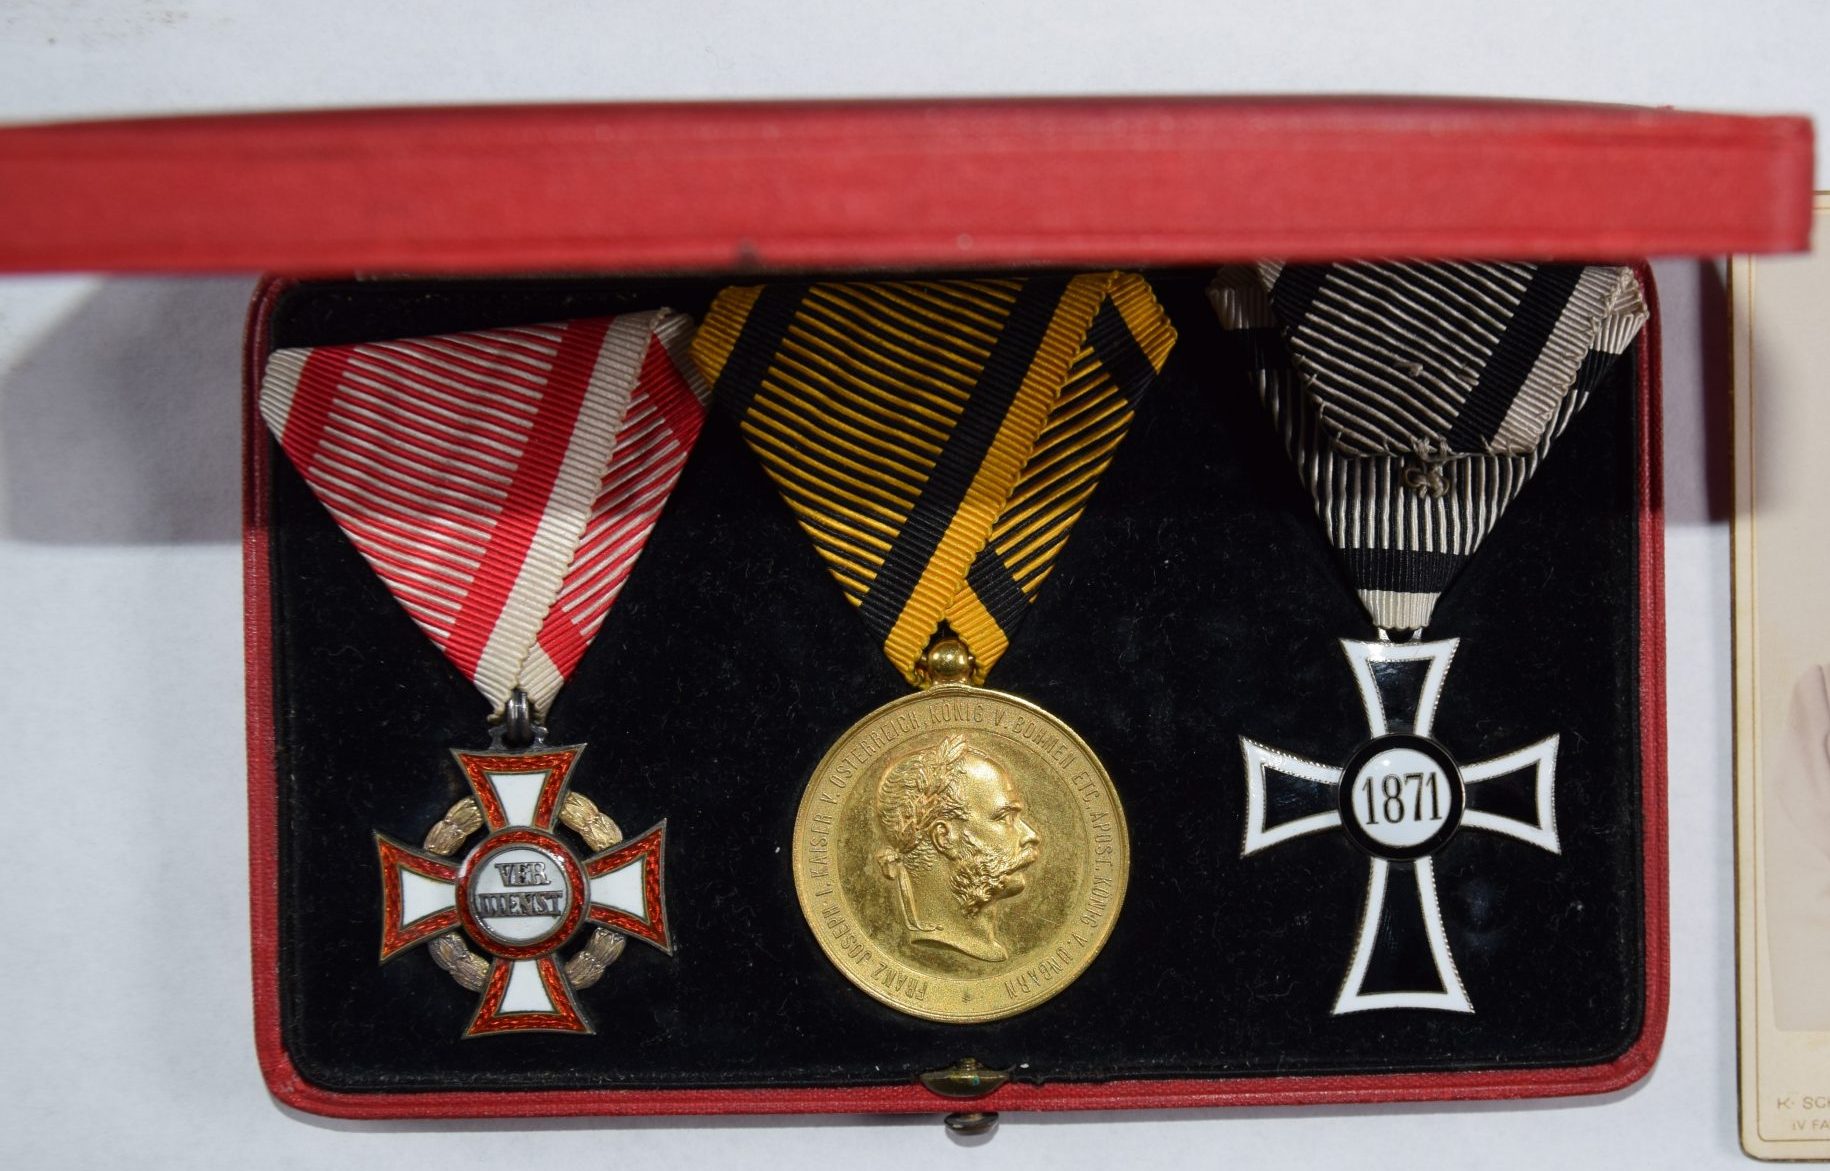 Das Bild zeigt die Aufnahme einer Schatulle, in der sich zwei Ordenskreuze und eine Medaille befinden.